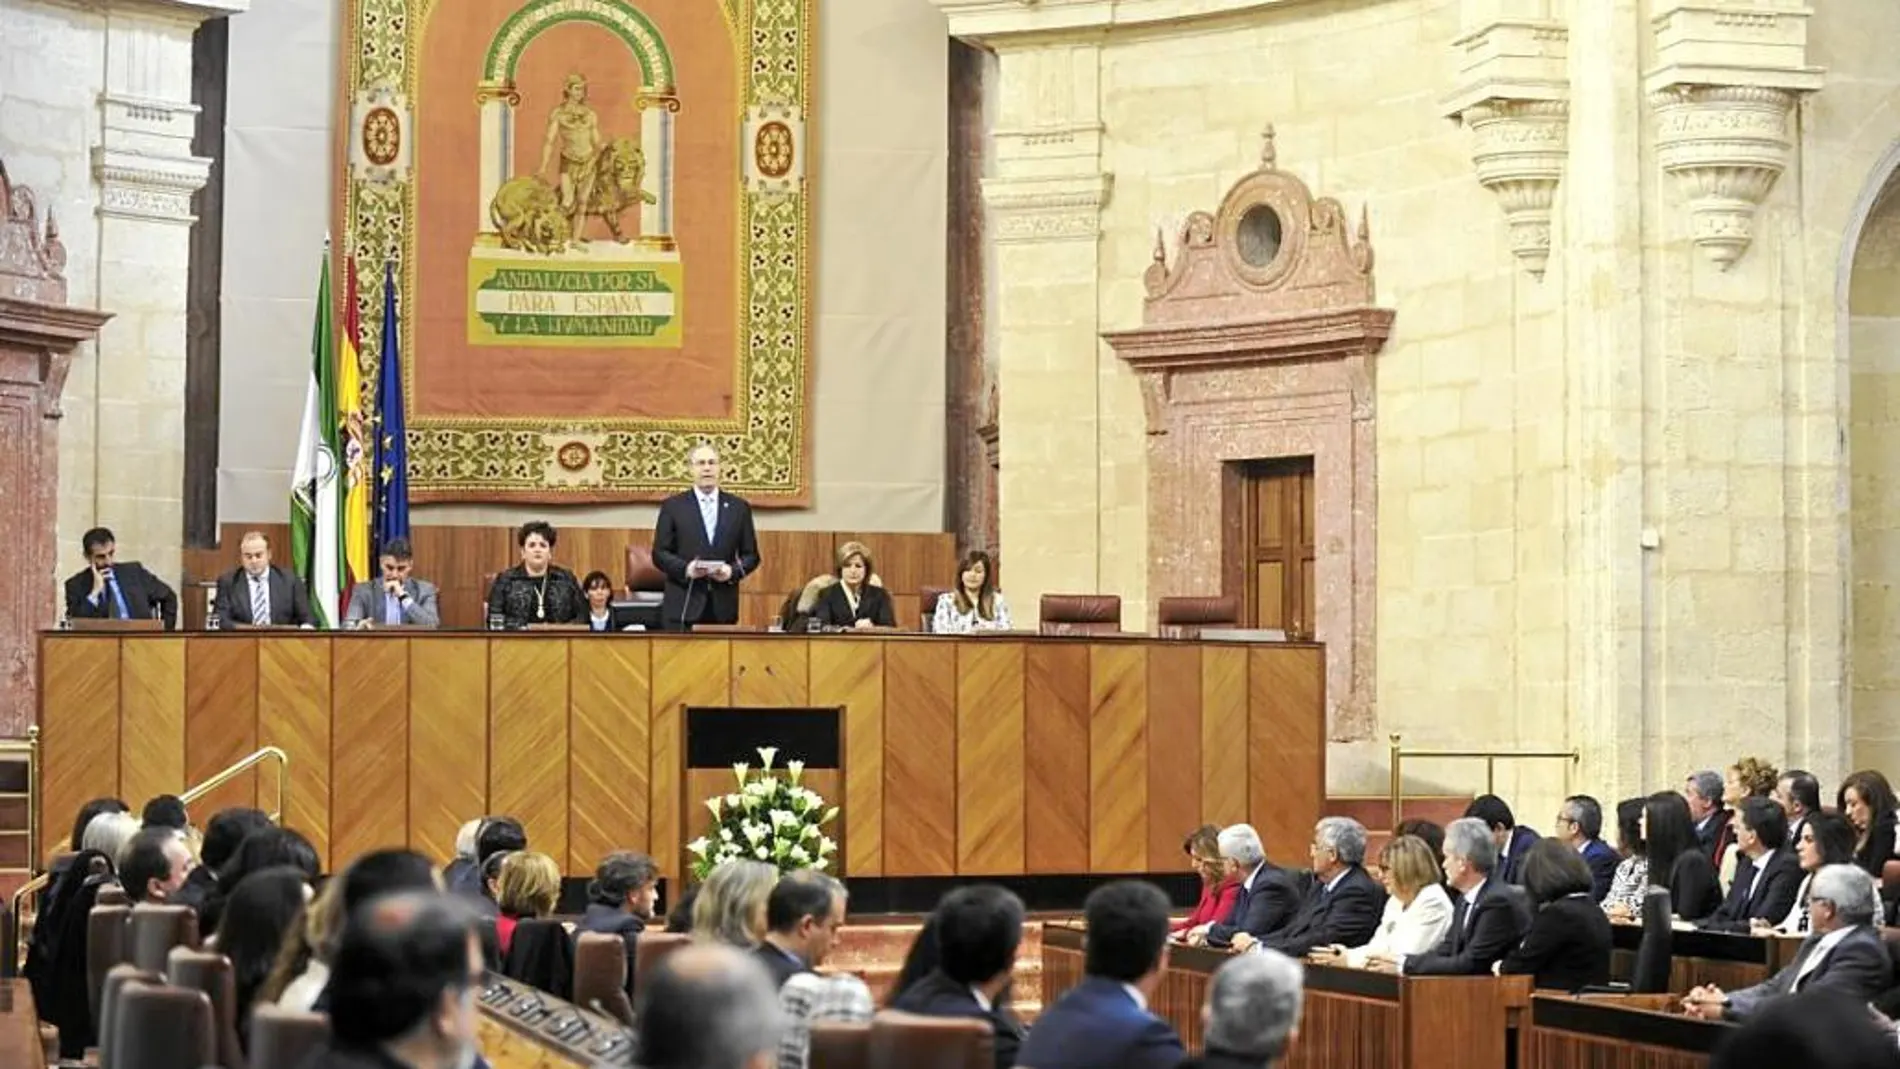 Juan Pablo Durán ofreció ayer un discurso durante un Pleno institucional en el Parlamento